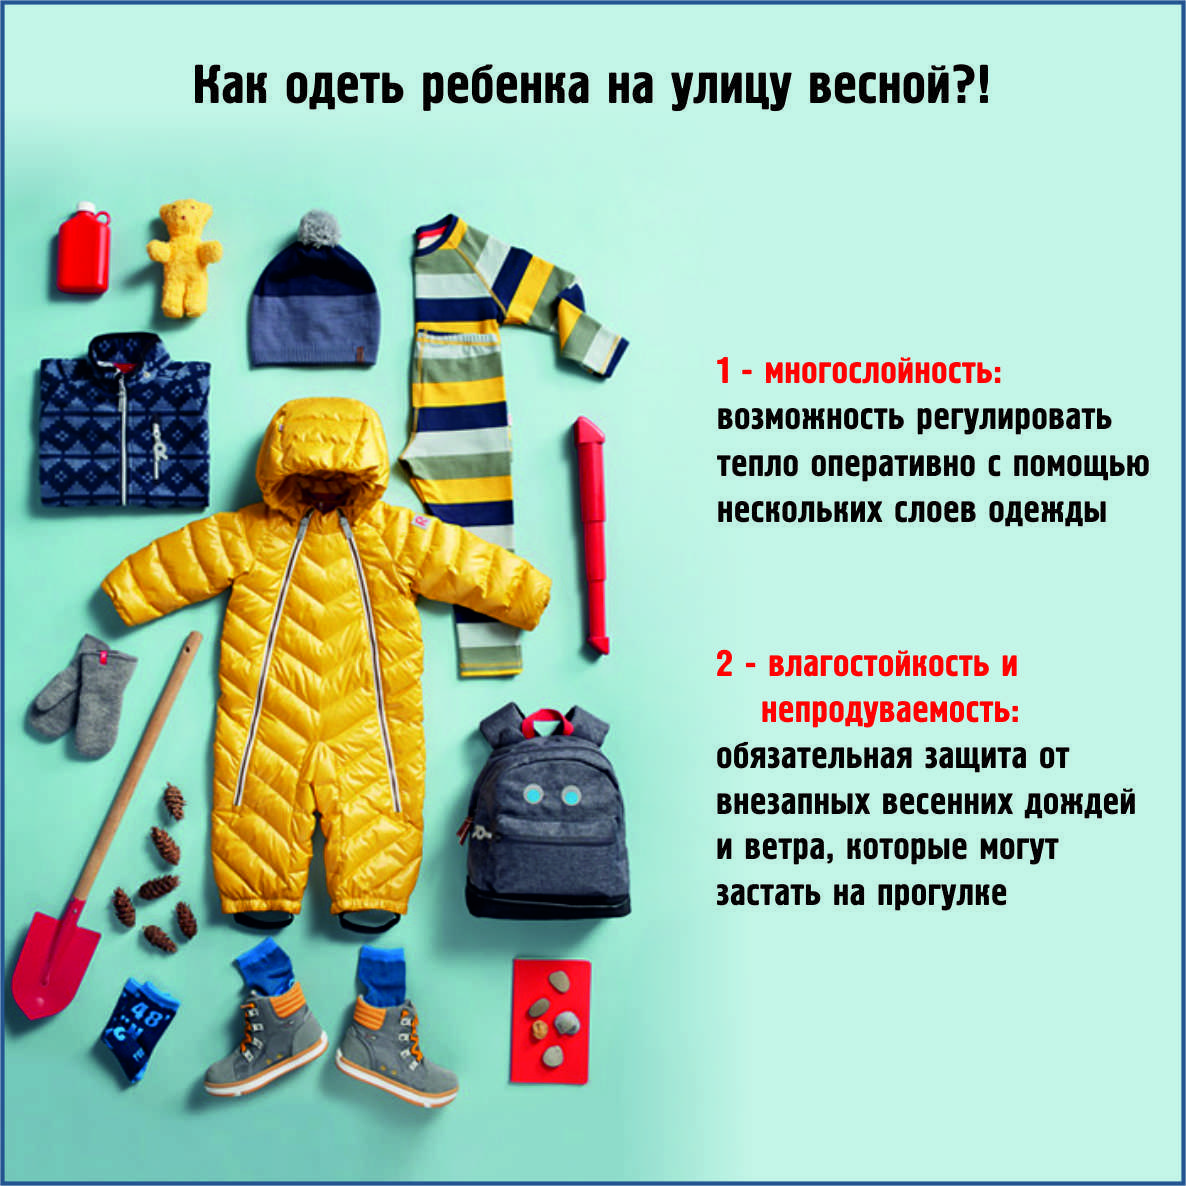 При какой температуре можно одевать весеннюю куртку. Как одеть ребенка. Как одевать ребенка на улицу. Как одевать малыша весной. Какмодеввть ретенка вечной.